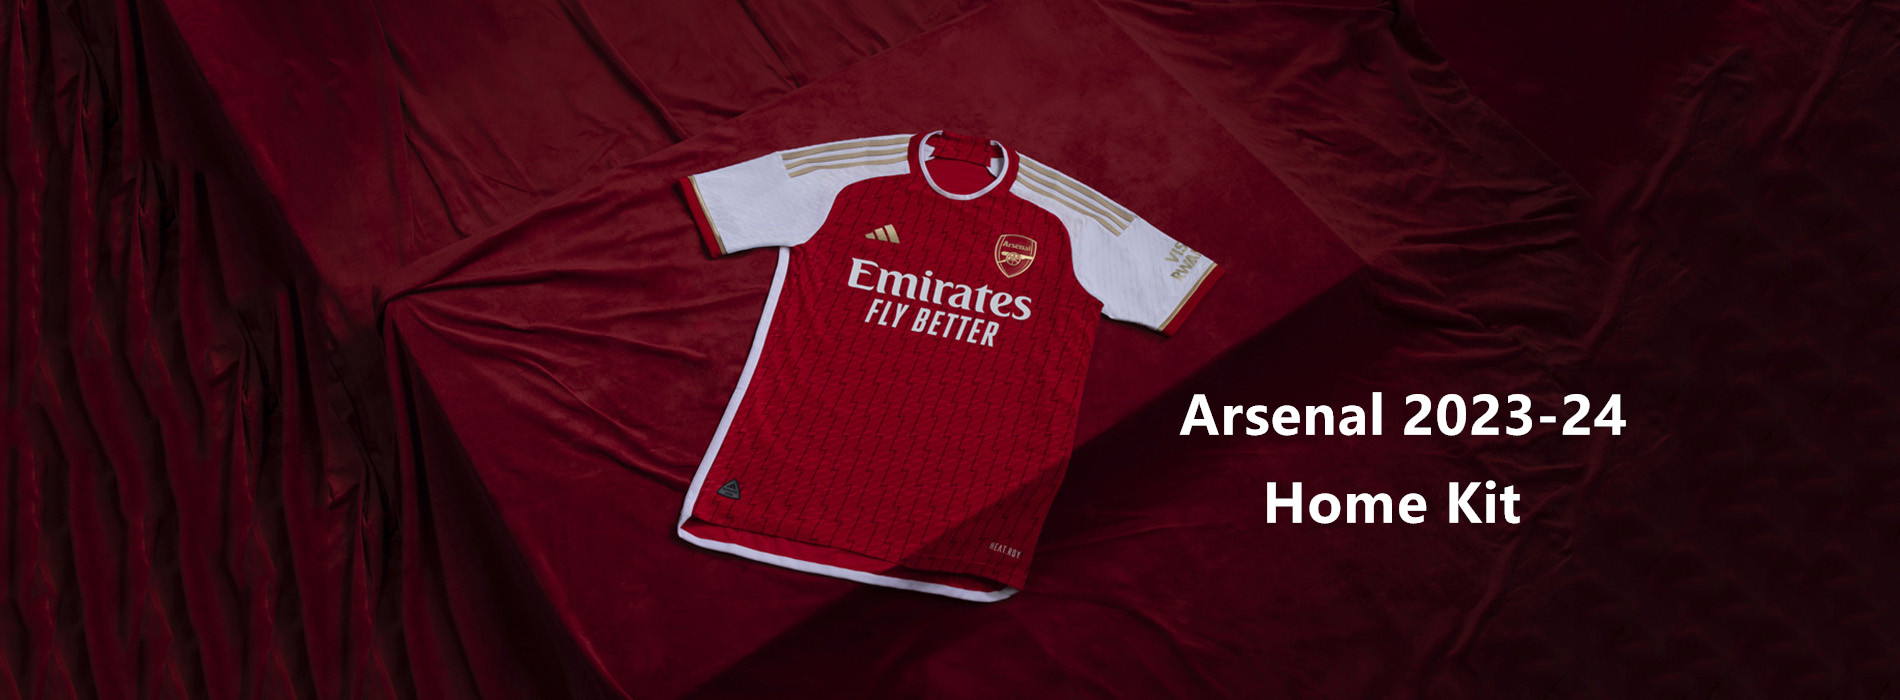 Arsenal tröja